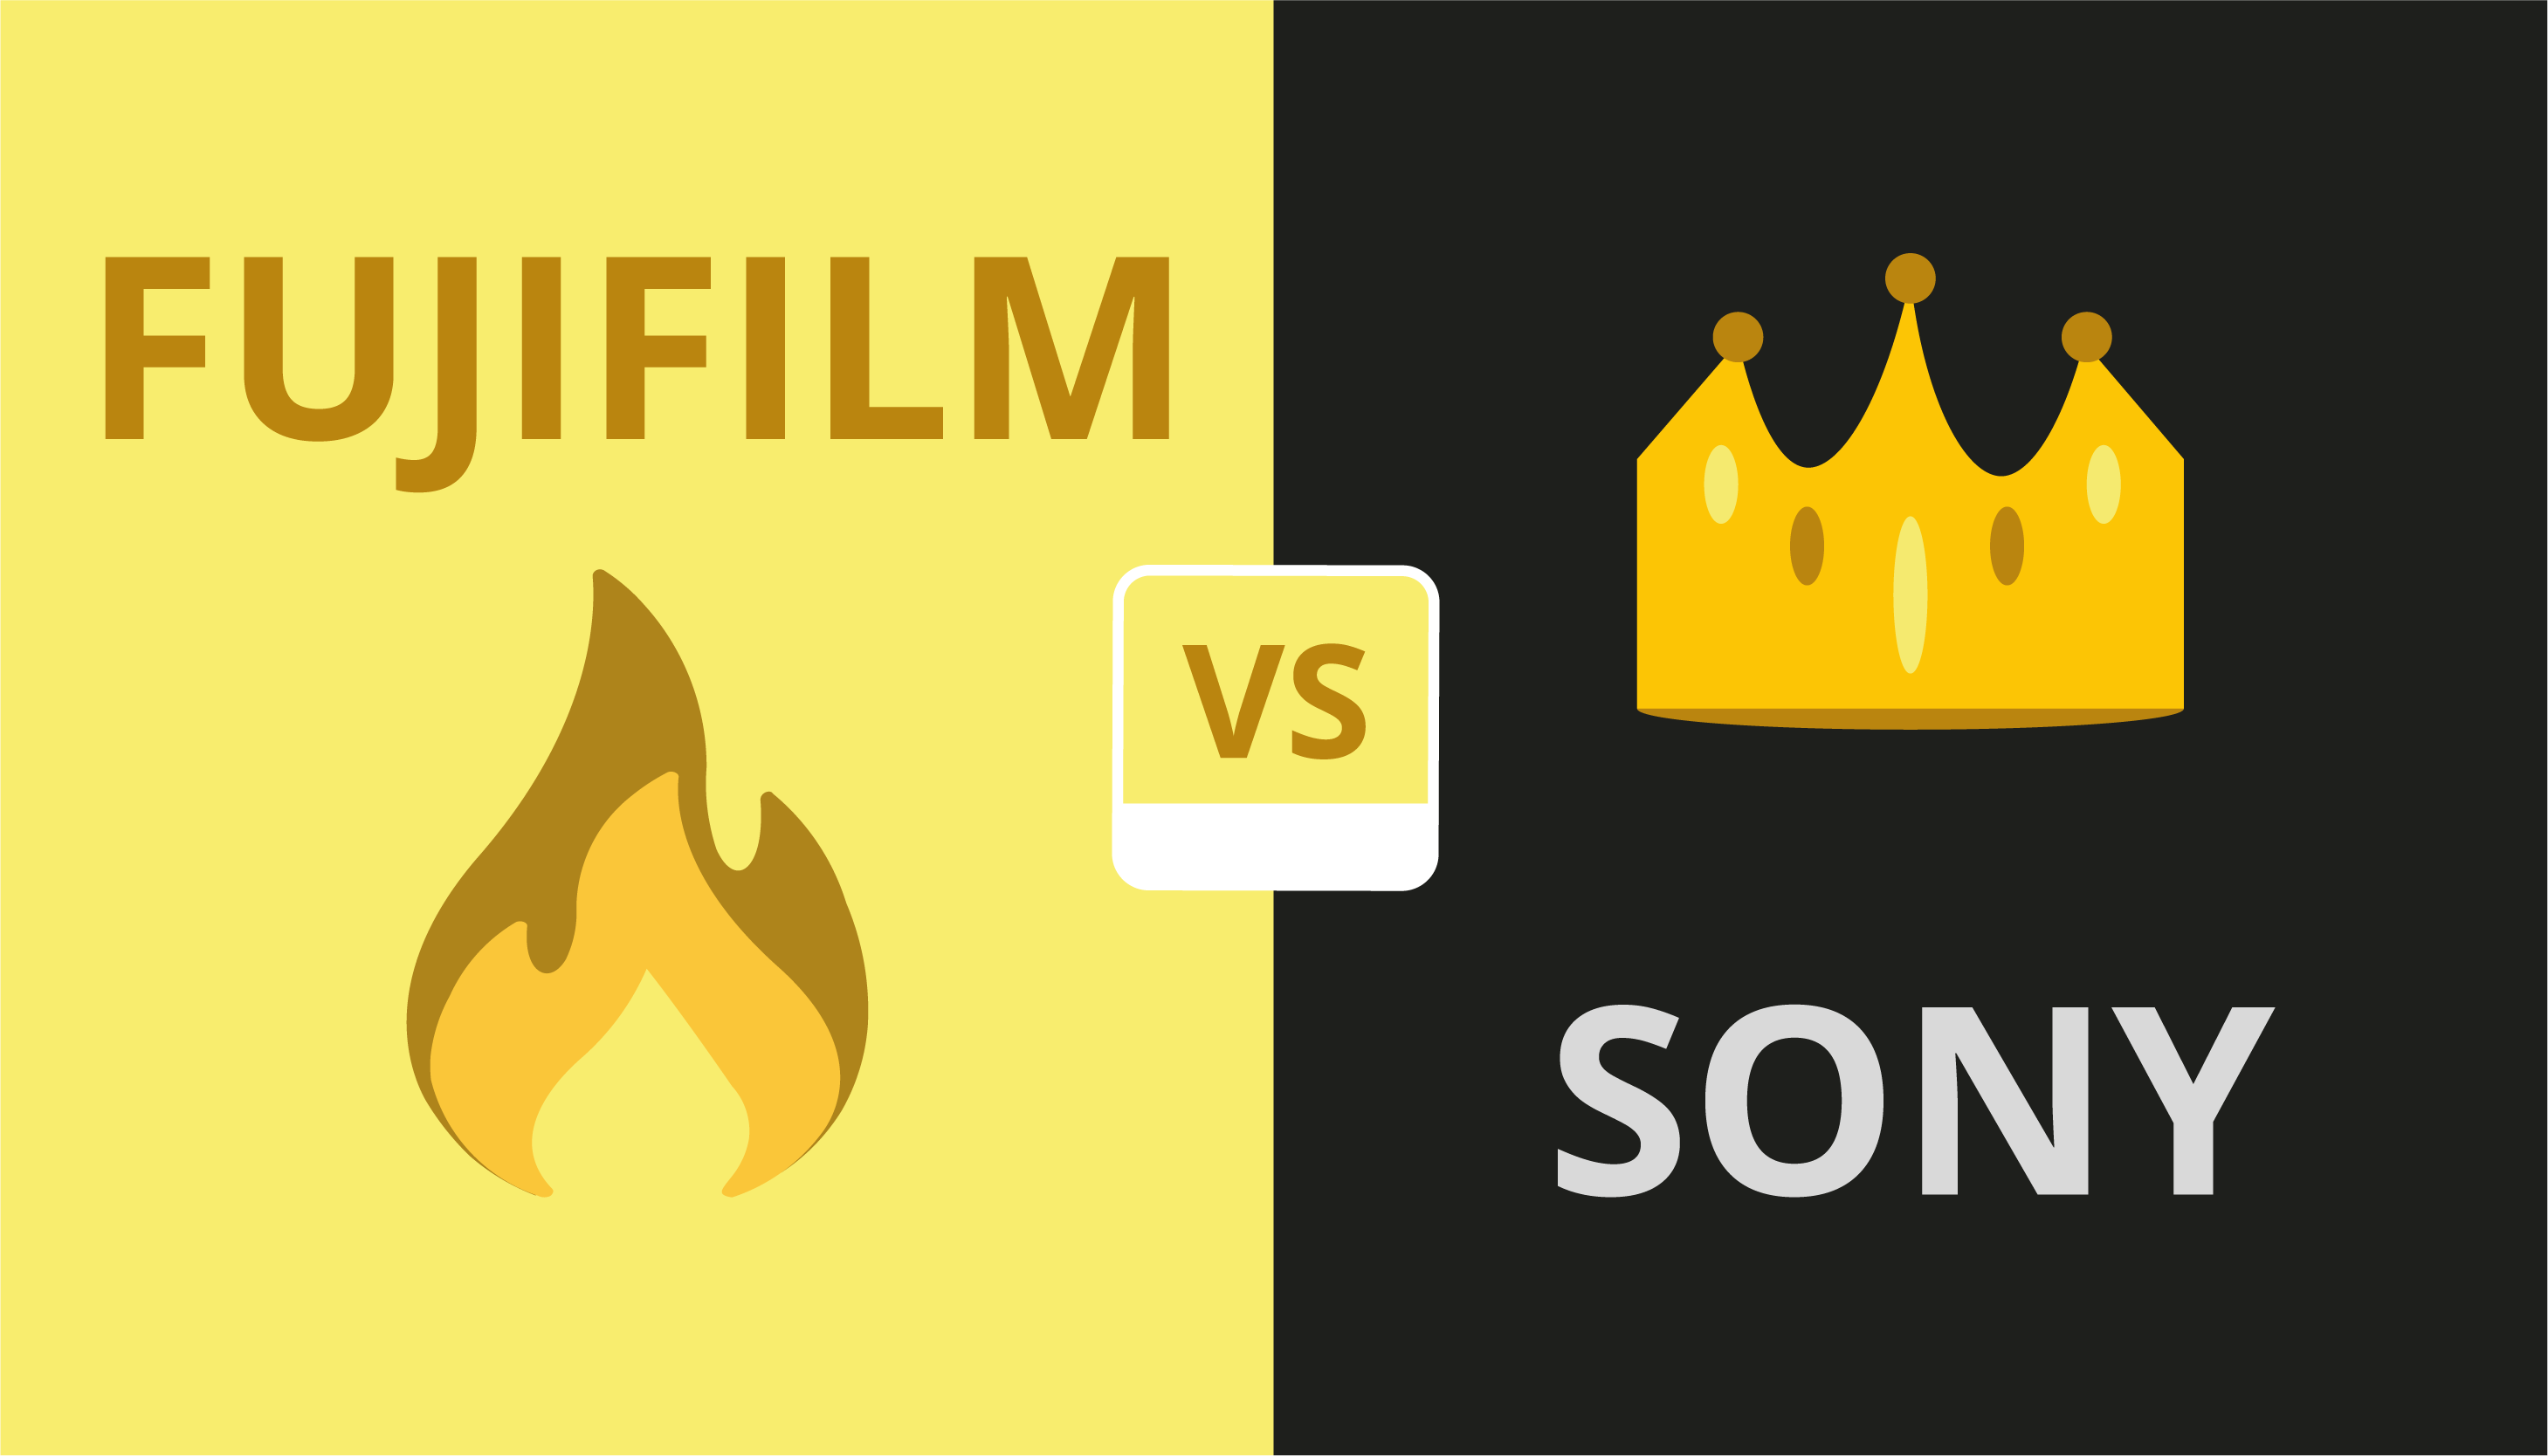 Fujifilm vs Sony comparison image